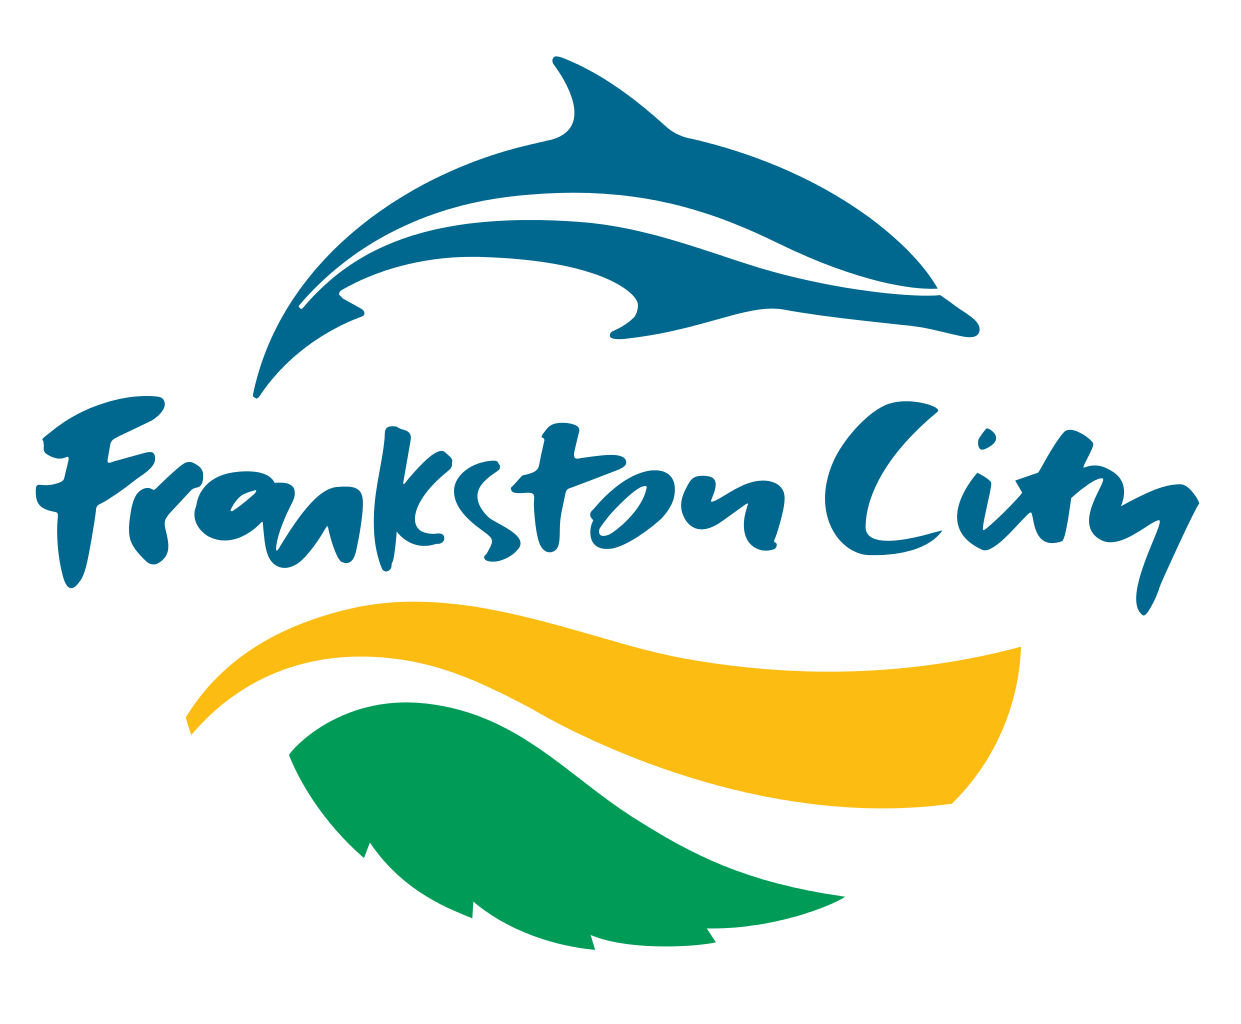 frankston-city-council